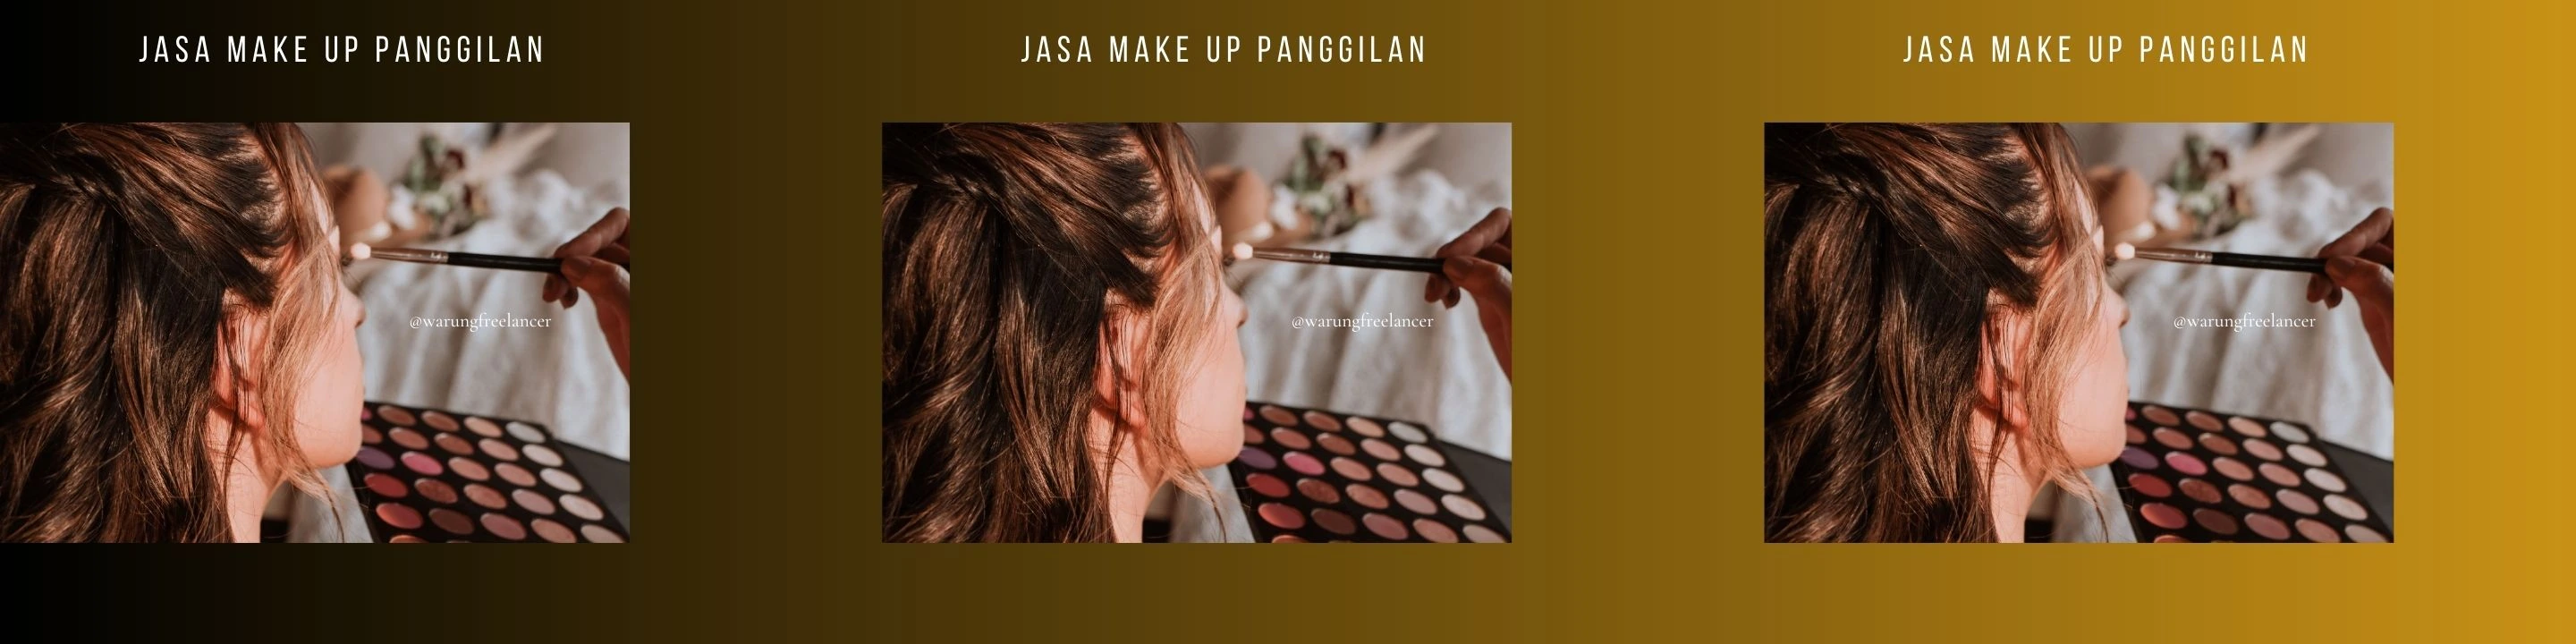 Jasa Make Up Panggilan